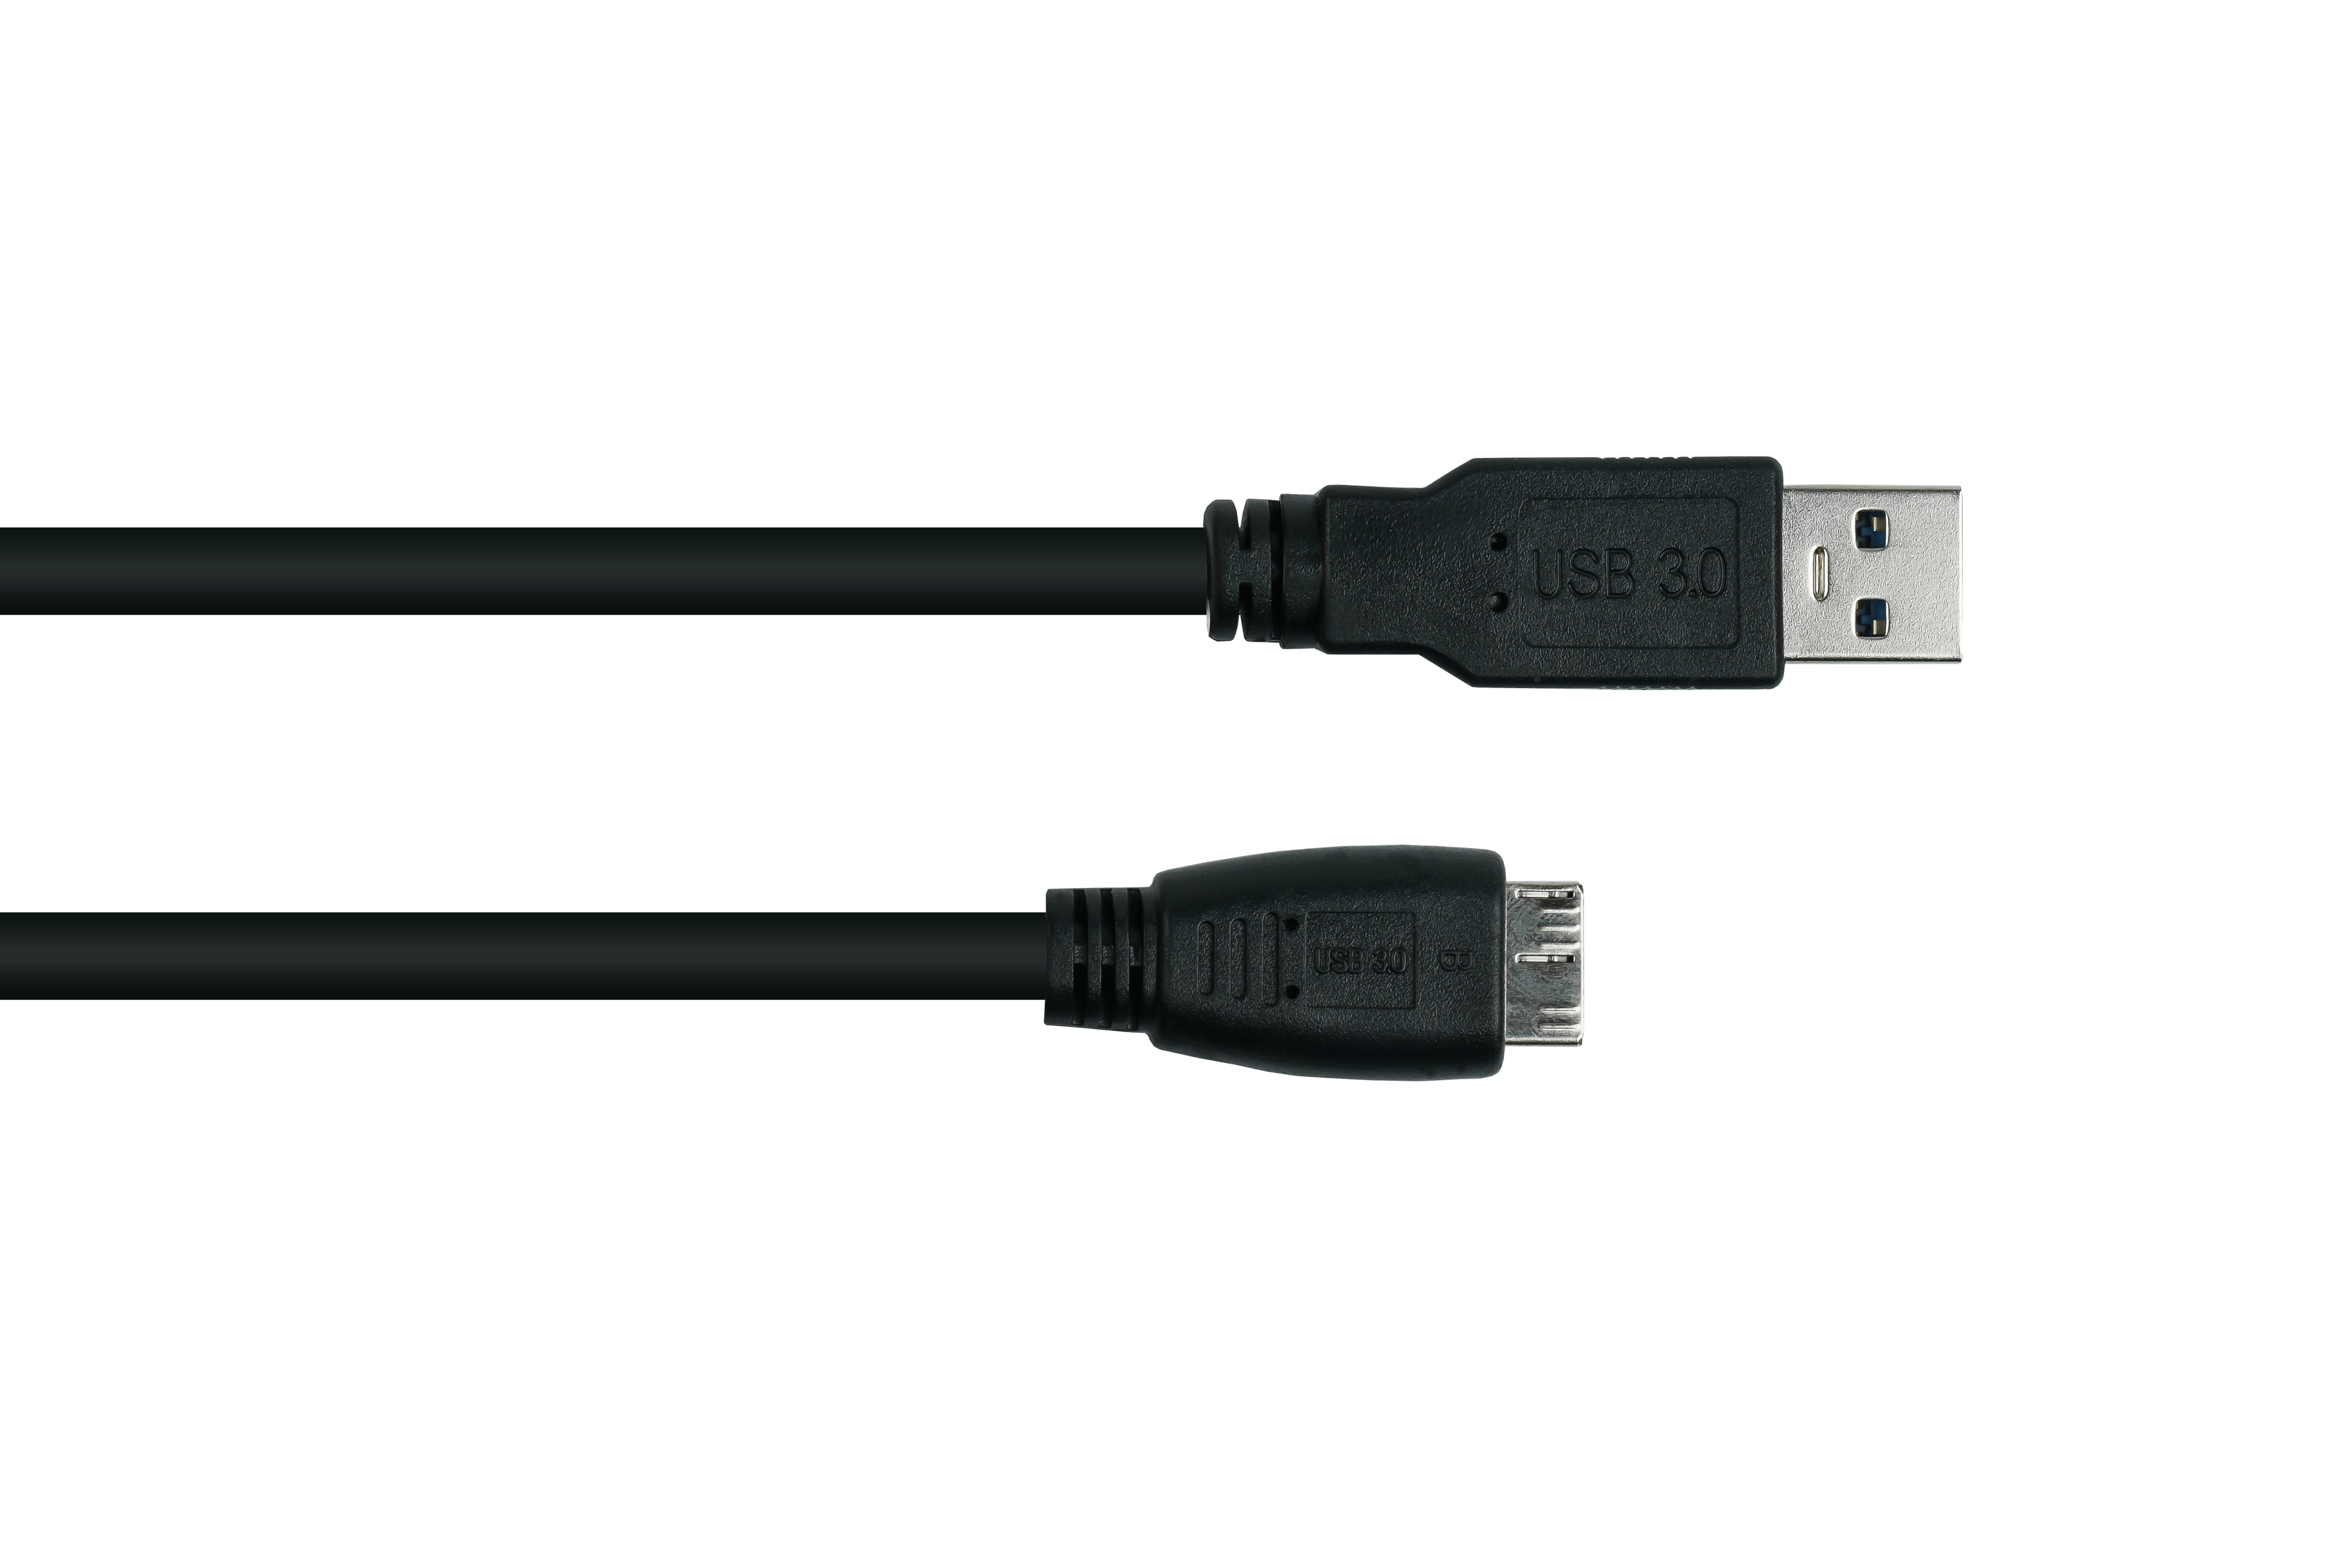 AWG24, KABELMEISTER an Stecker USB Stecker 3.0 A / AWG28 Micro UL, Kabel B,Premium, schwarz KUPFER,